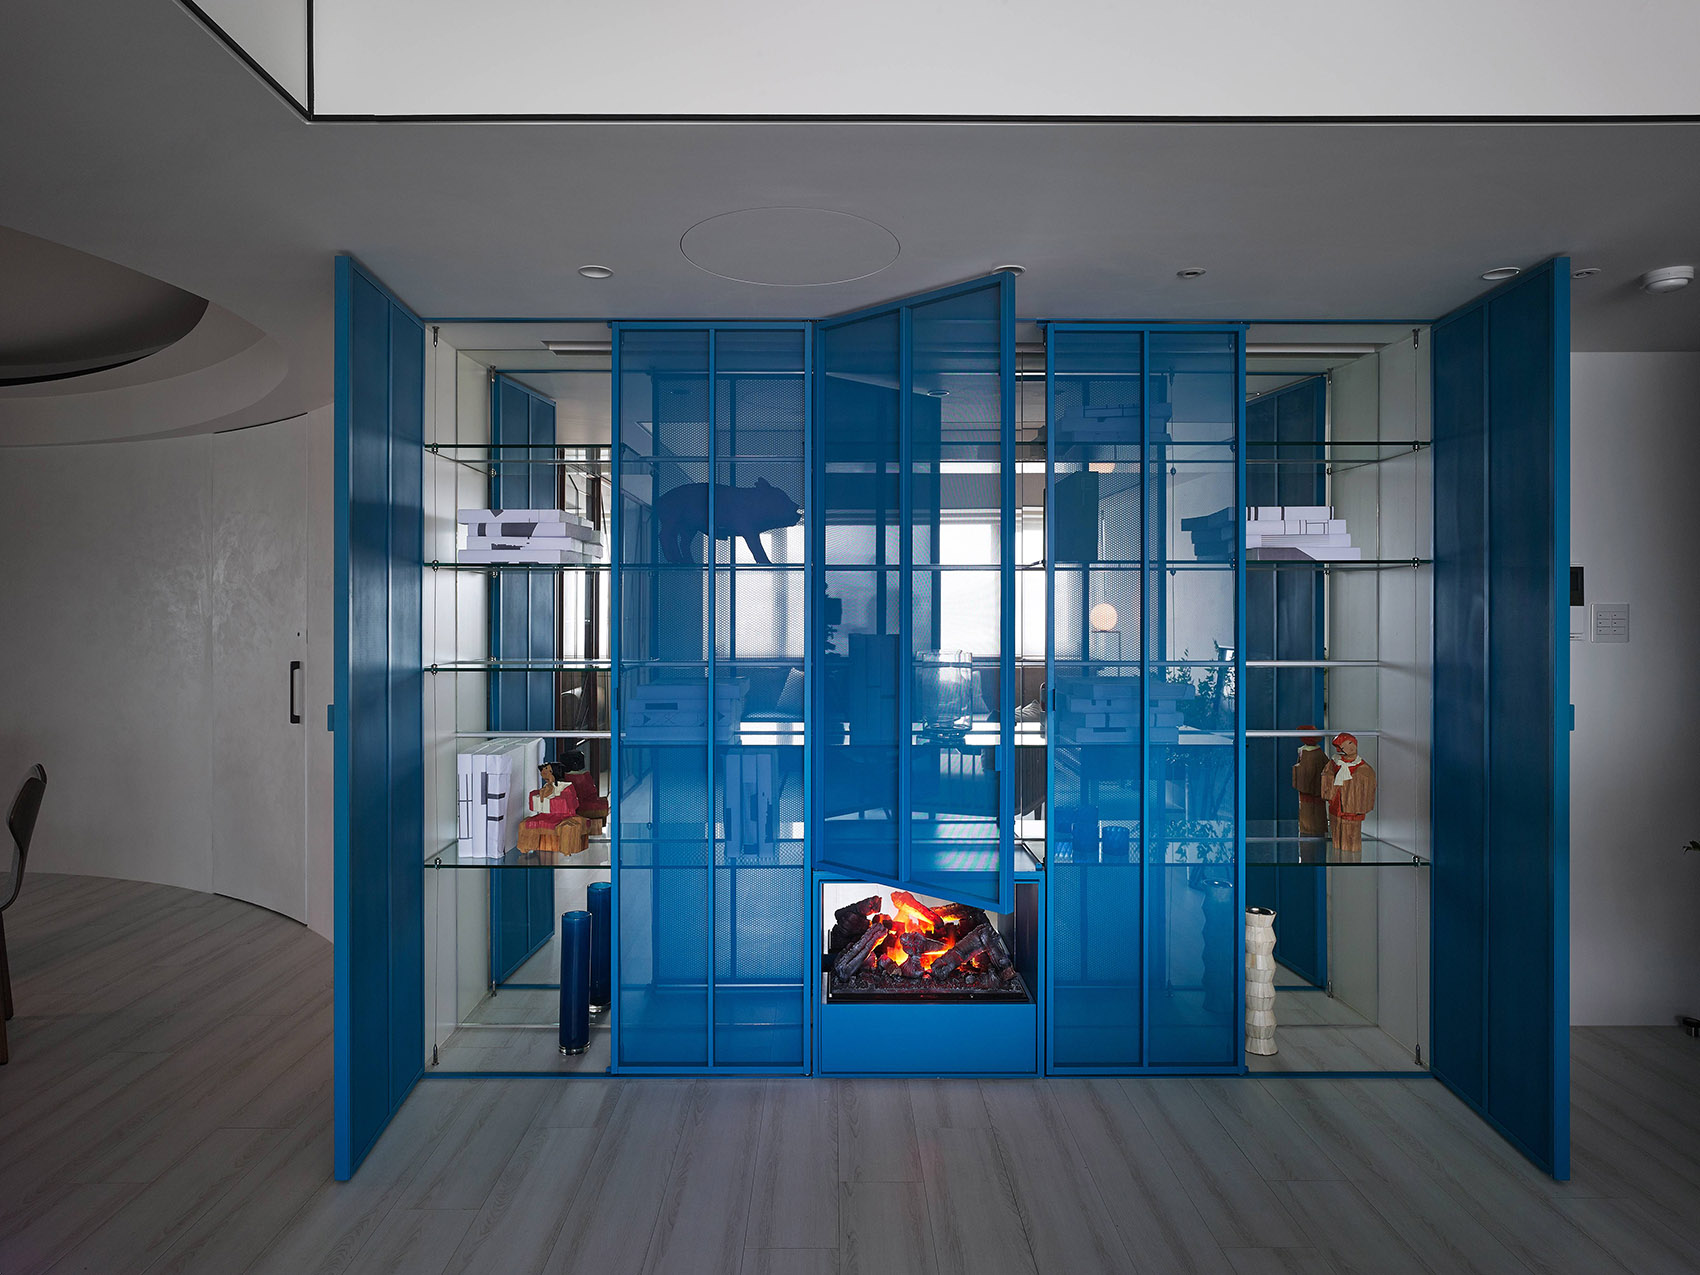 玄关处设计了蓝色收纳柜，打破了硬装的冰冷与傲慢，是空间变得浪漫且活跃。